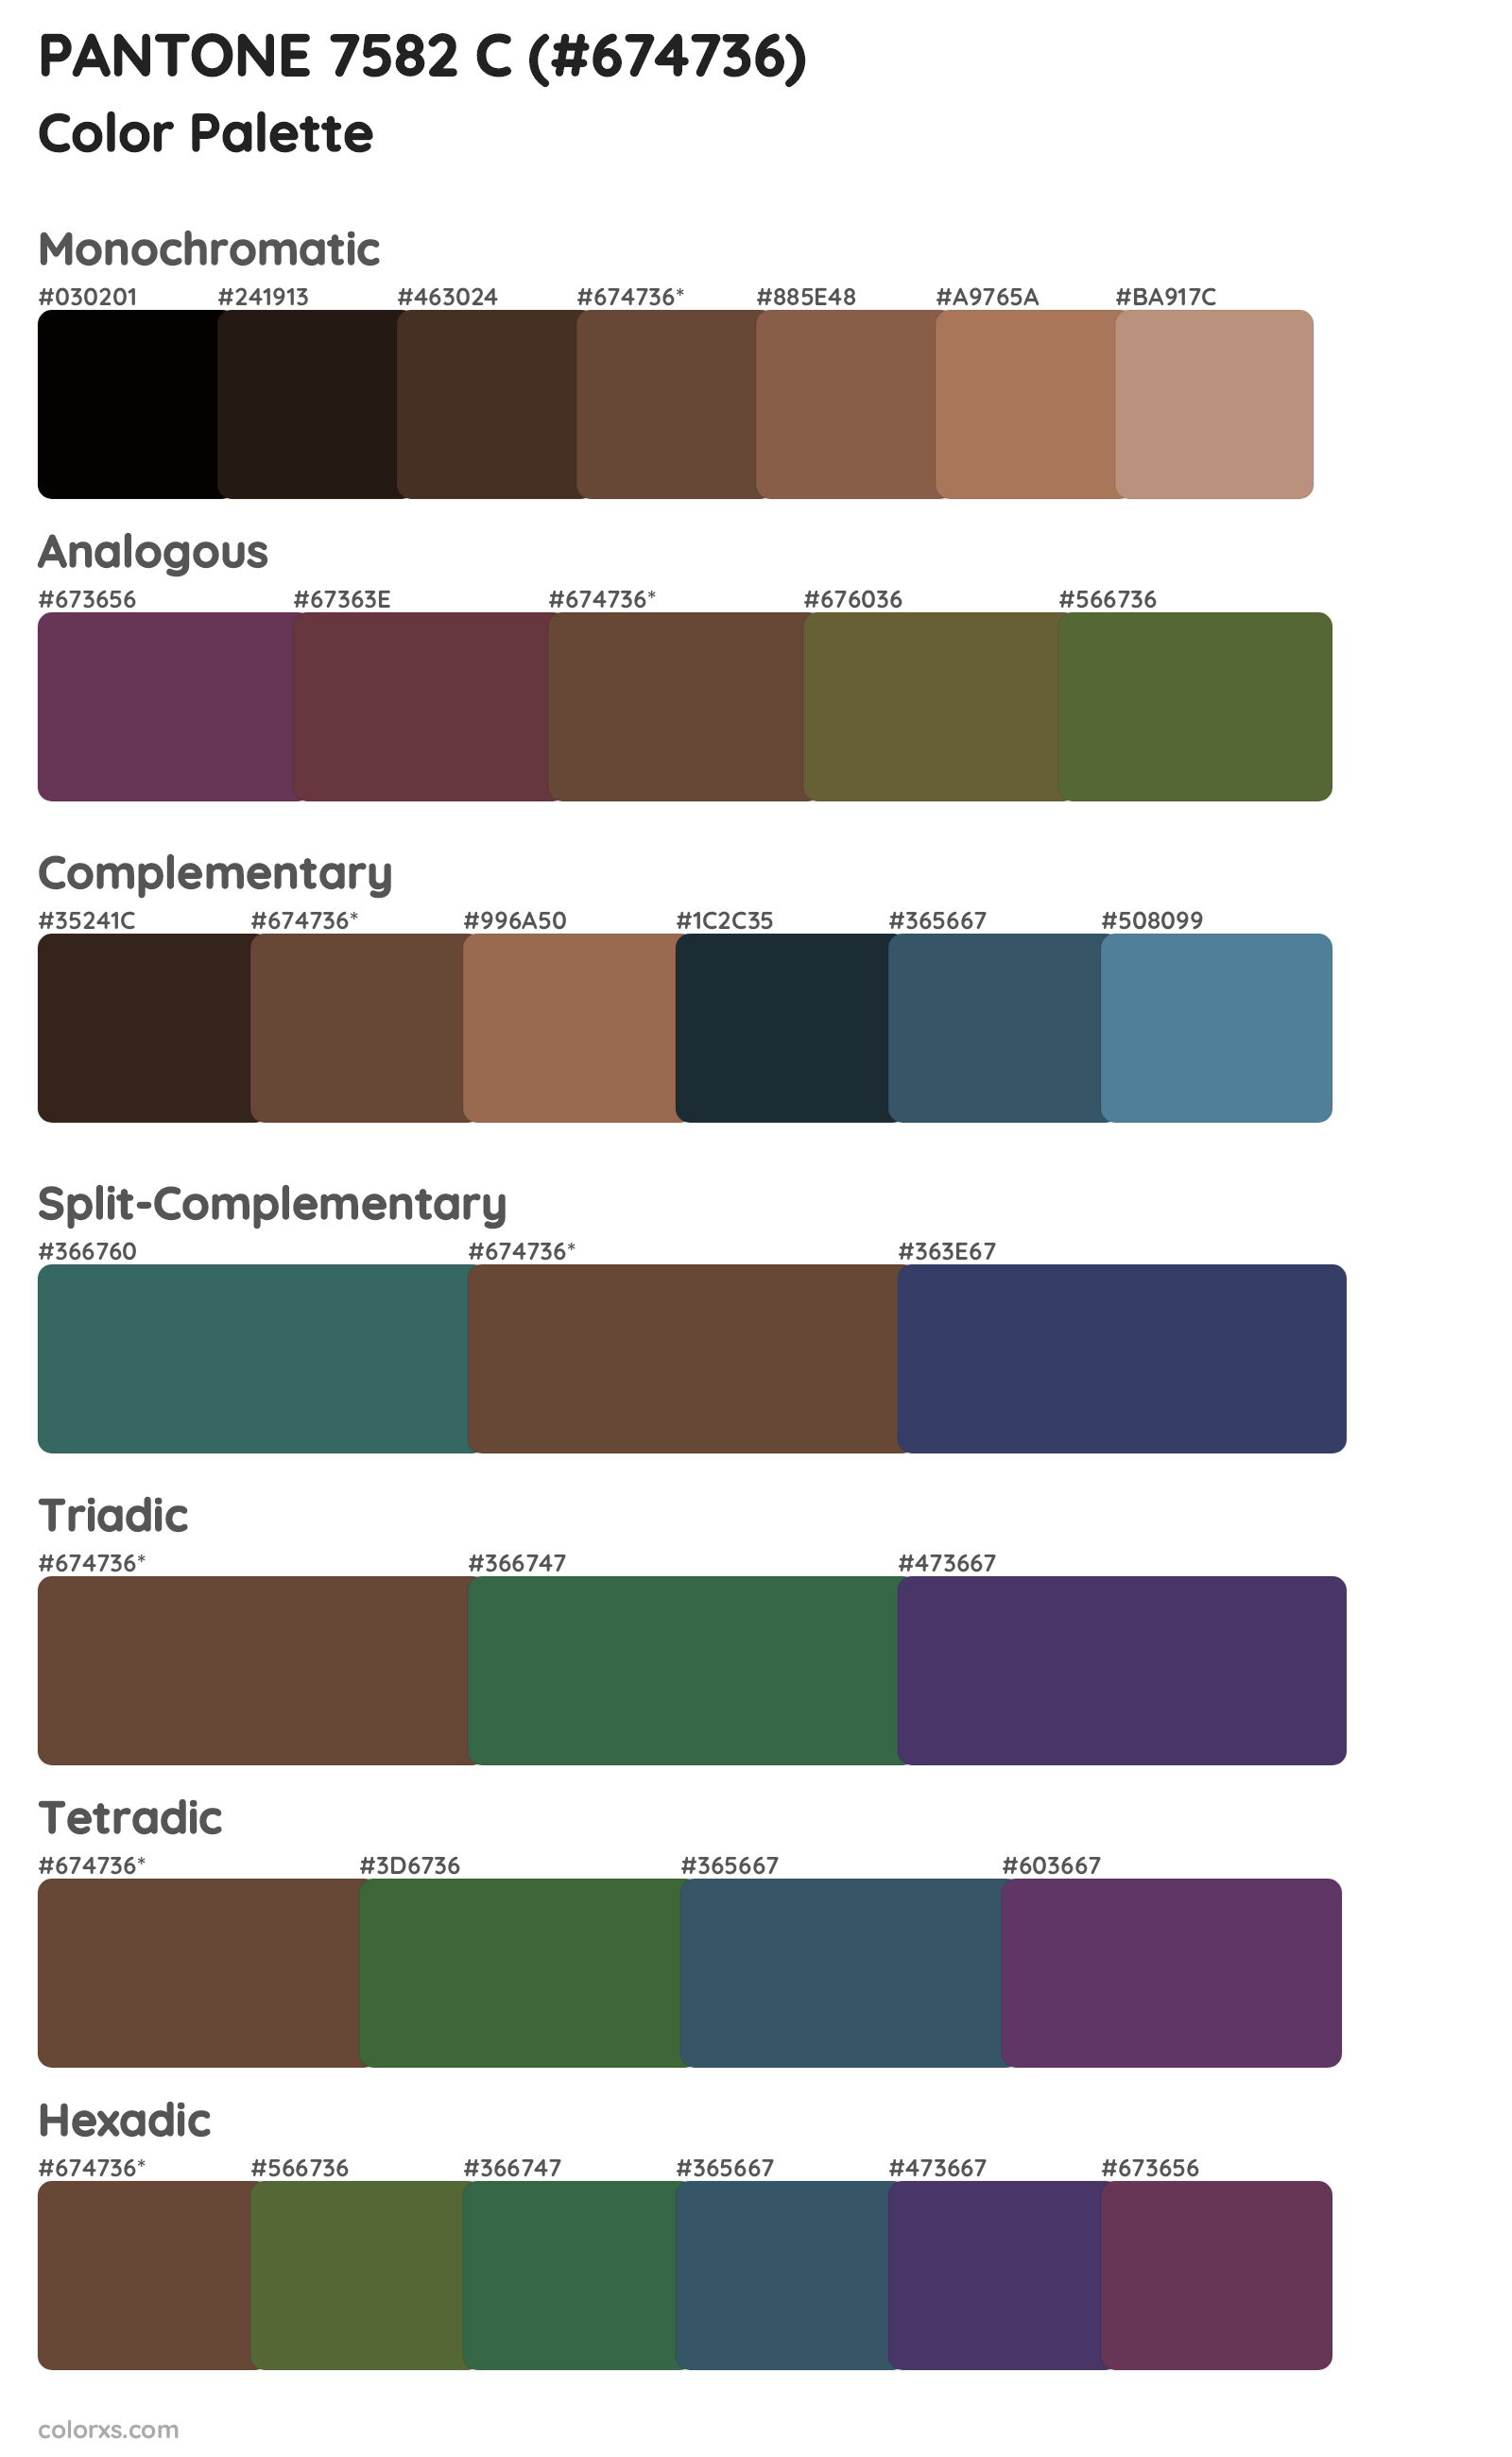 PANTONE 7582 C Color Scheme Palettes